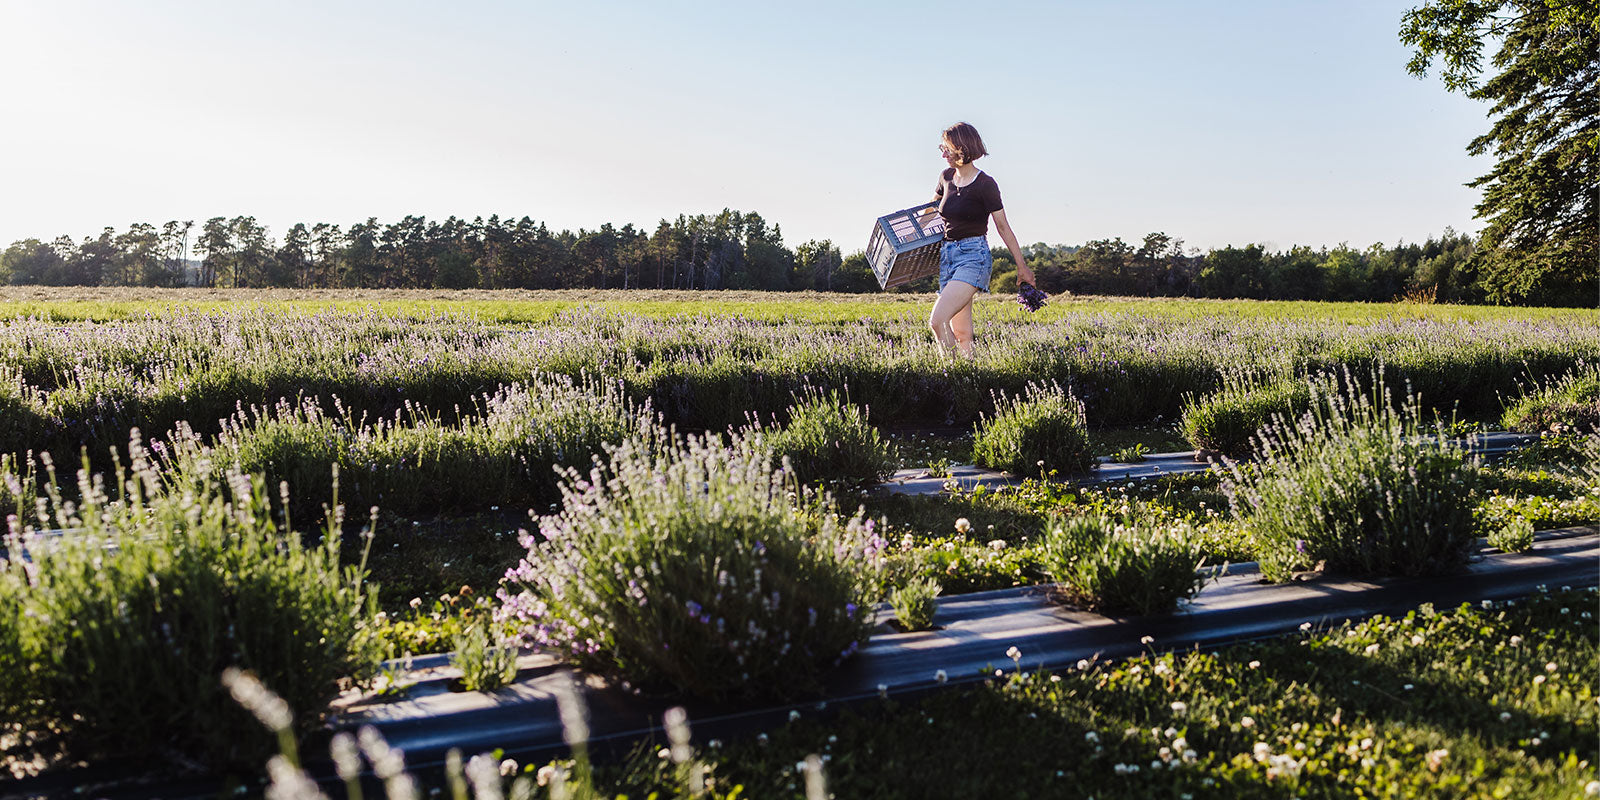 Stephanie walks through field of lavender plants blooming